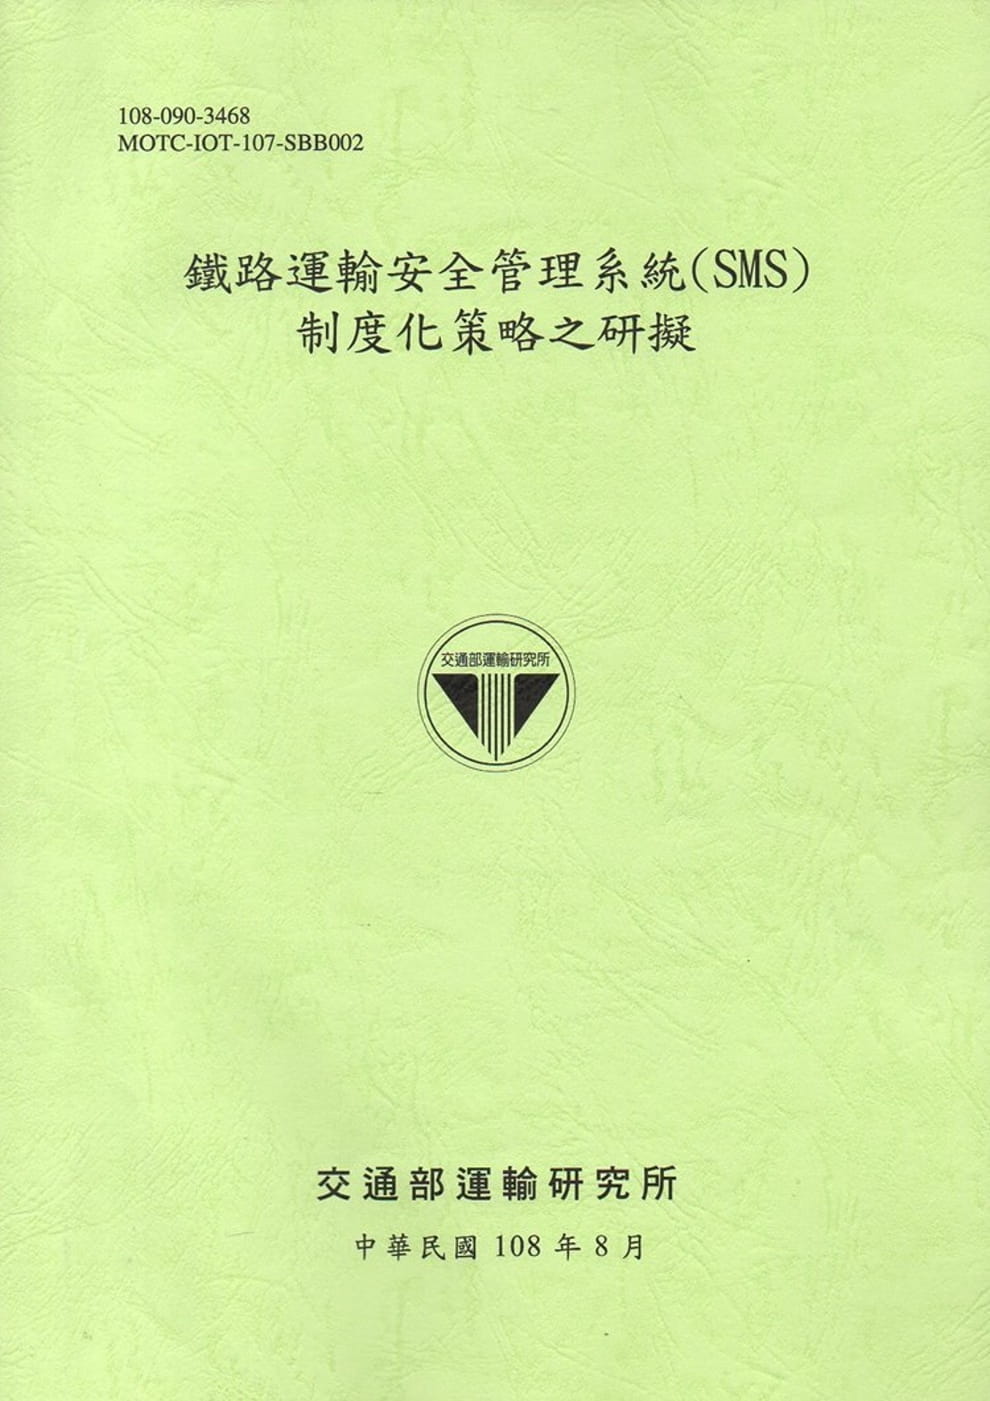 鐵路運輸安全管理系統(SMS)制度化策略之研擬[108綠]